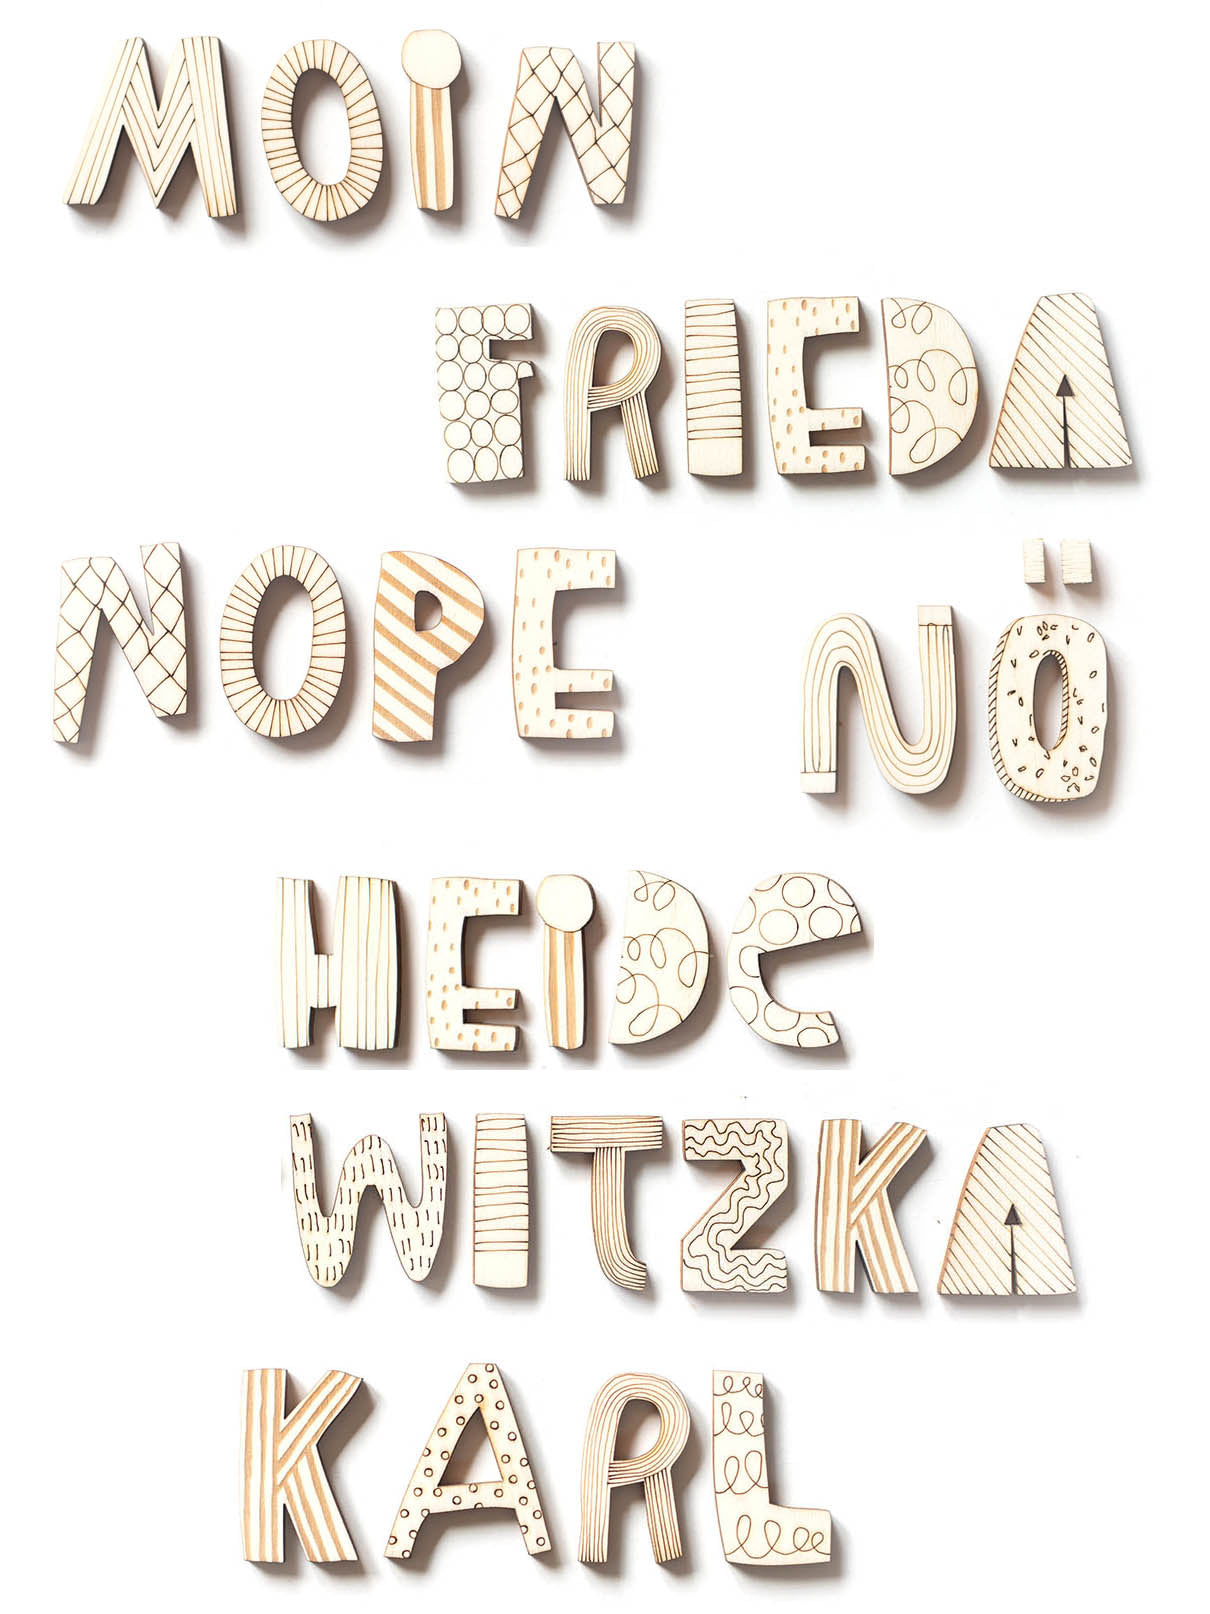 Viele Wörter gelegt mit Holzbuchstaben, unter anderem liegt dort Moin, Frieda, Nope, Nö, heidewitzka, Karl